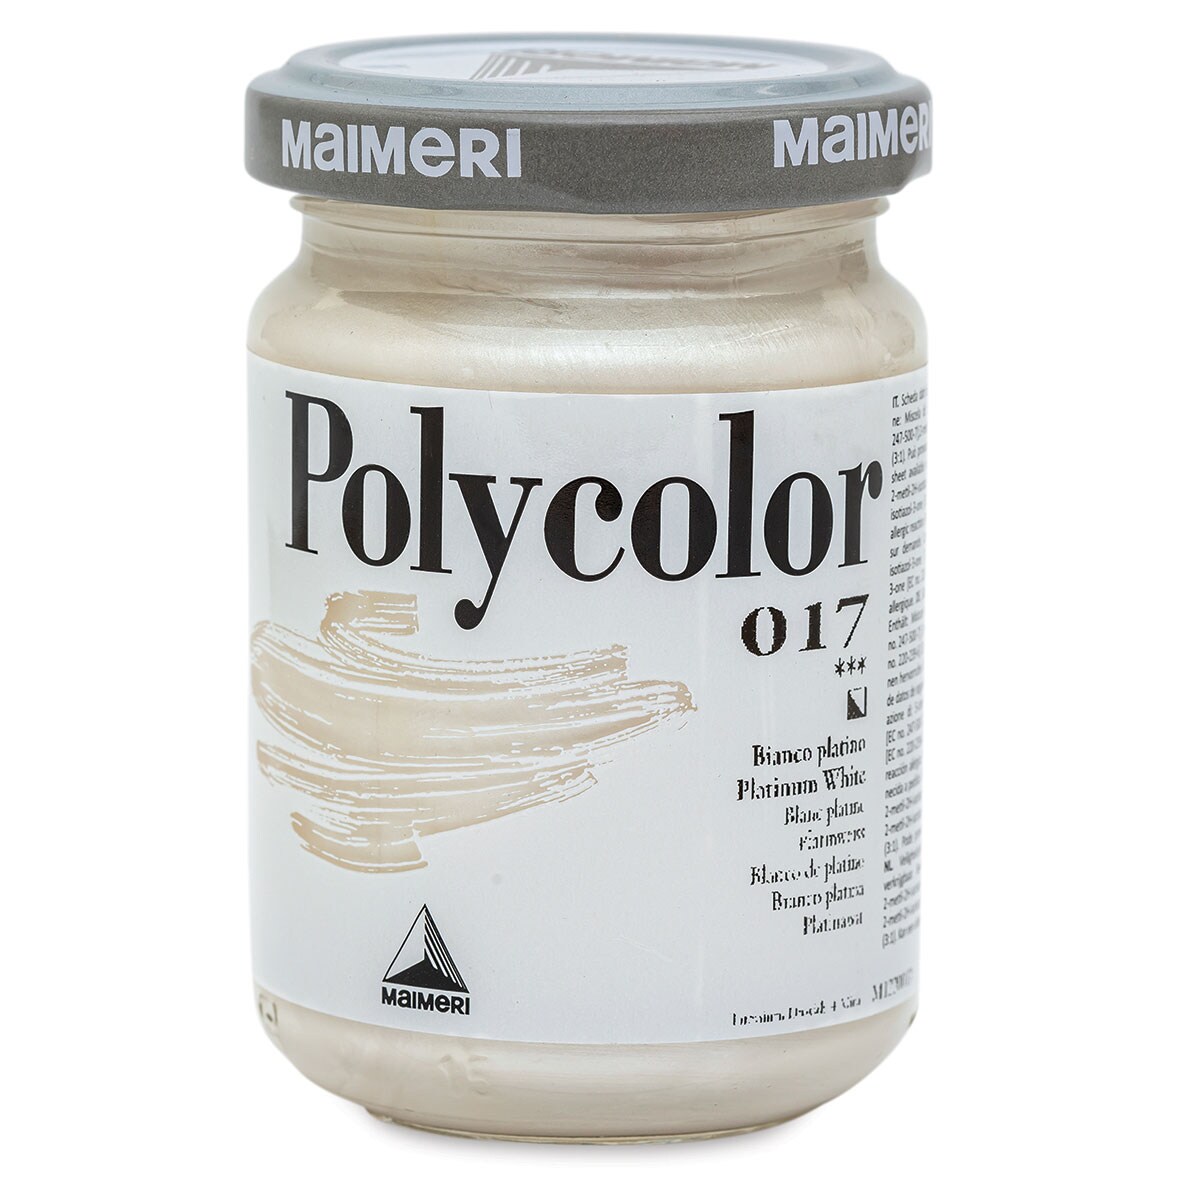 Maimeri Polycolor Vinyl Paints - Platinum White, 140 ml Jar | Michaels